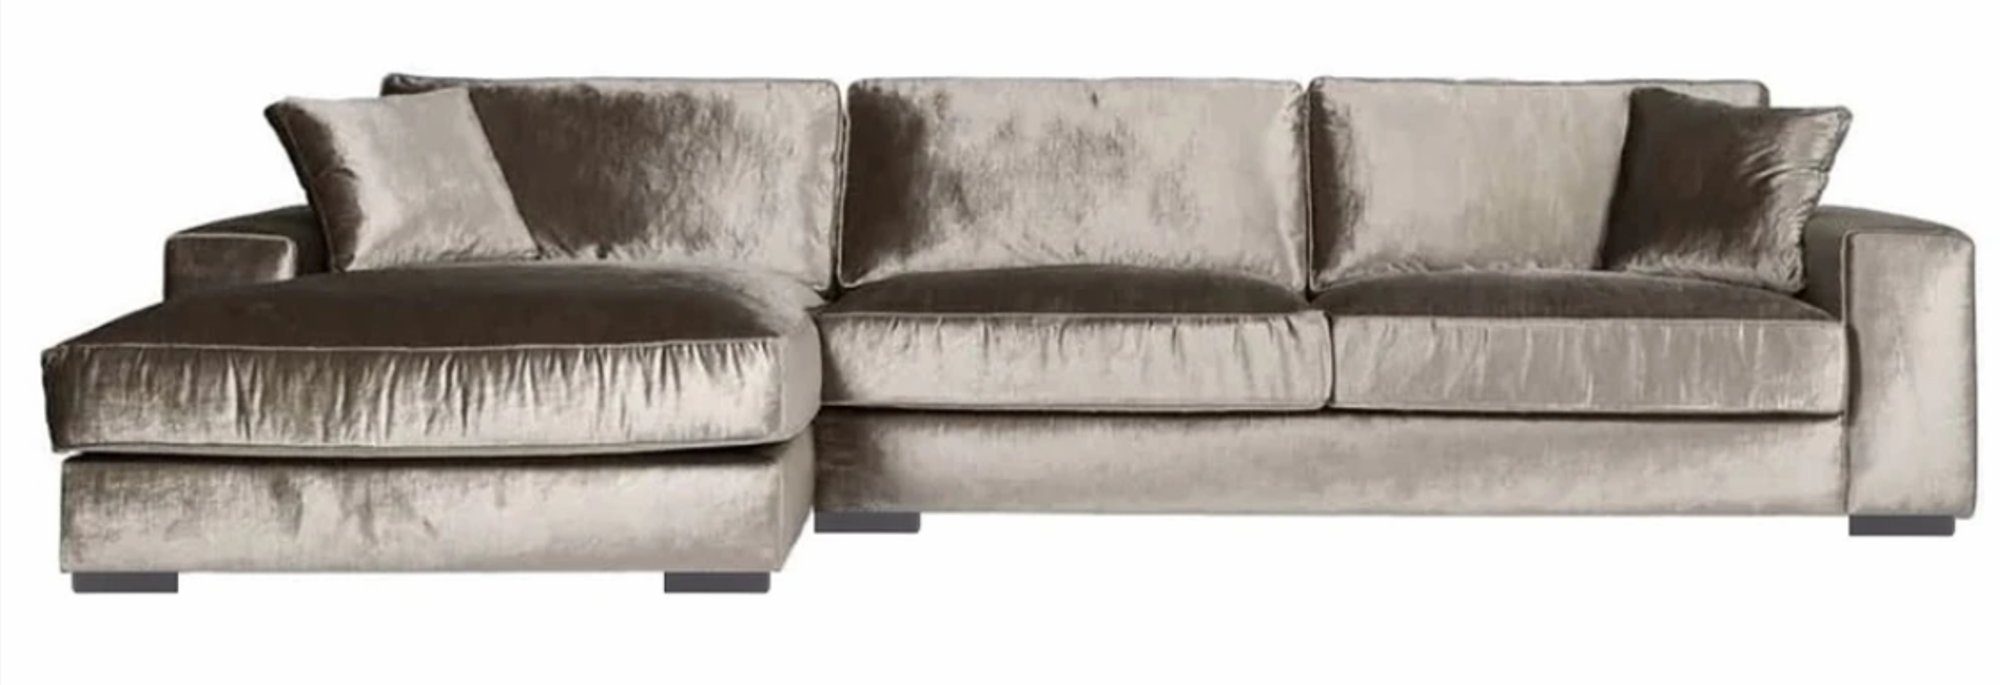 JVmoebel Ecksofa Braunes Ecksofa Stoff Wohnzimmer Design Couchen Polster Sofa, Made in Europe